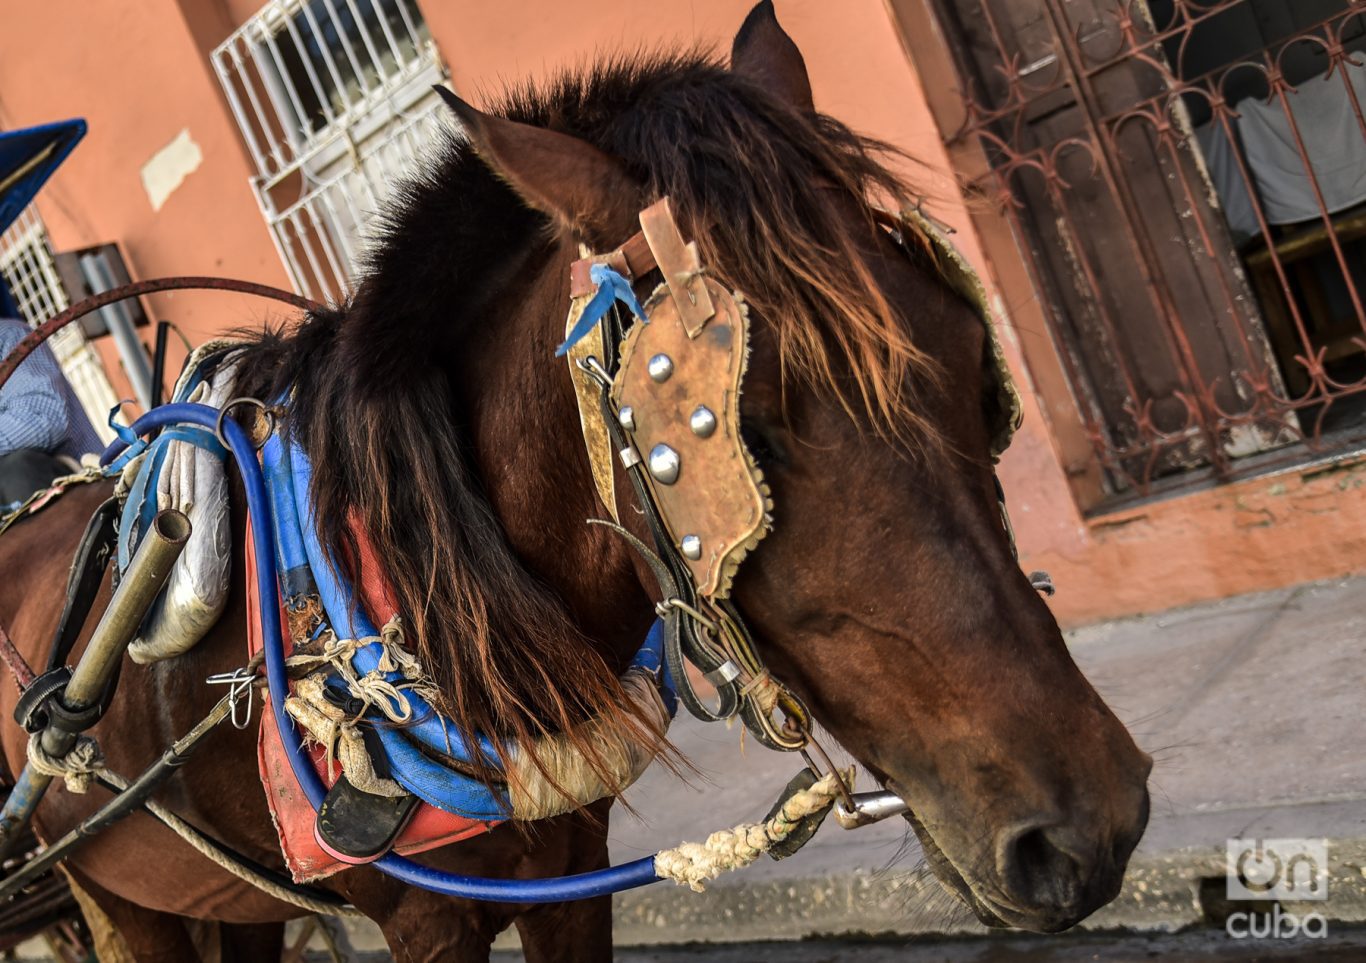 En la mayoría de las ocasiones los caballos no usan los arreos adecuados. Foto: Kaloian.
